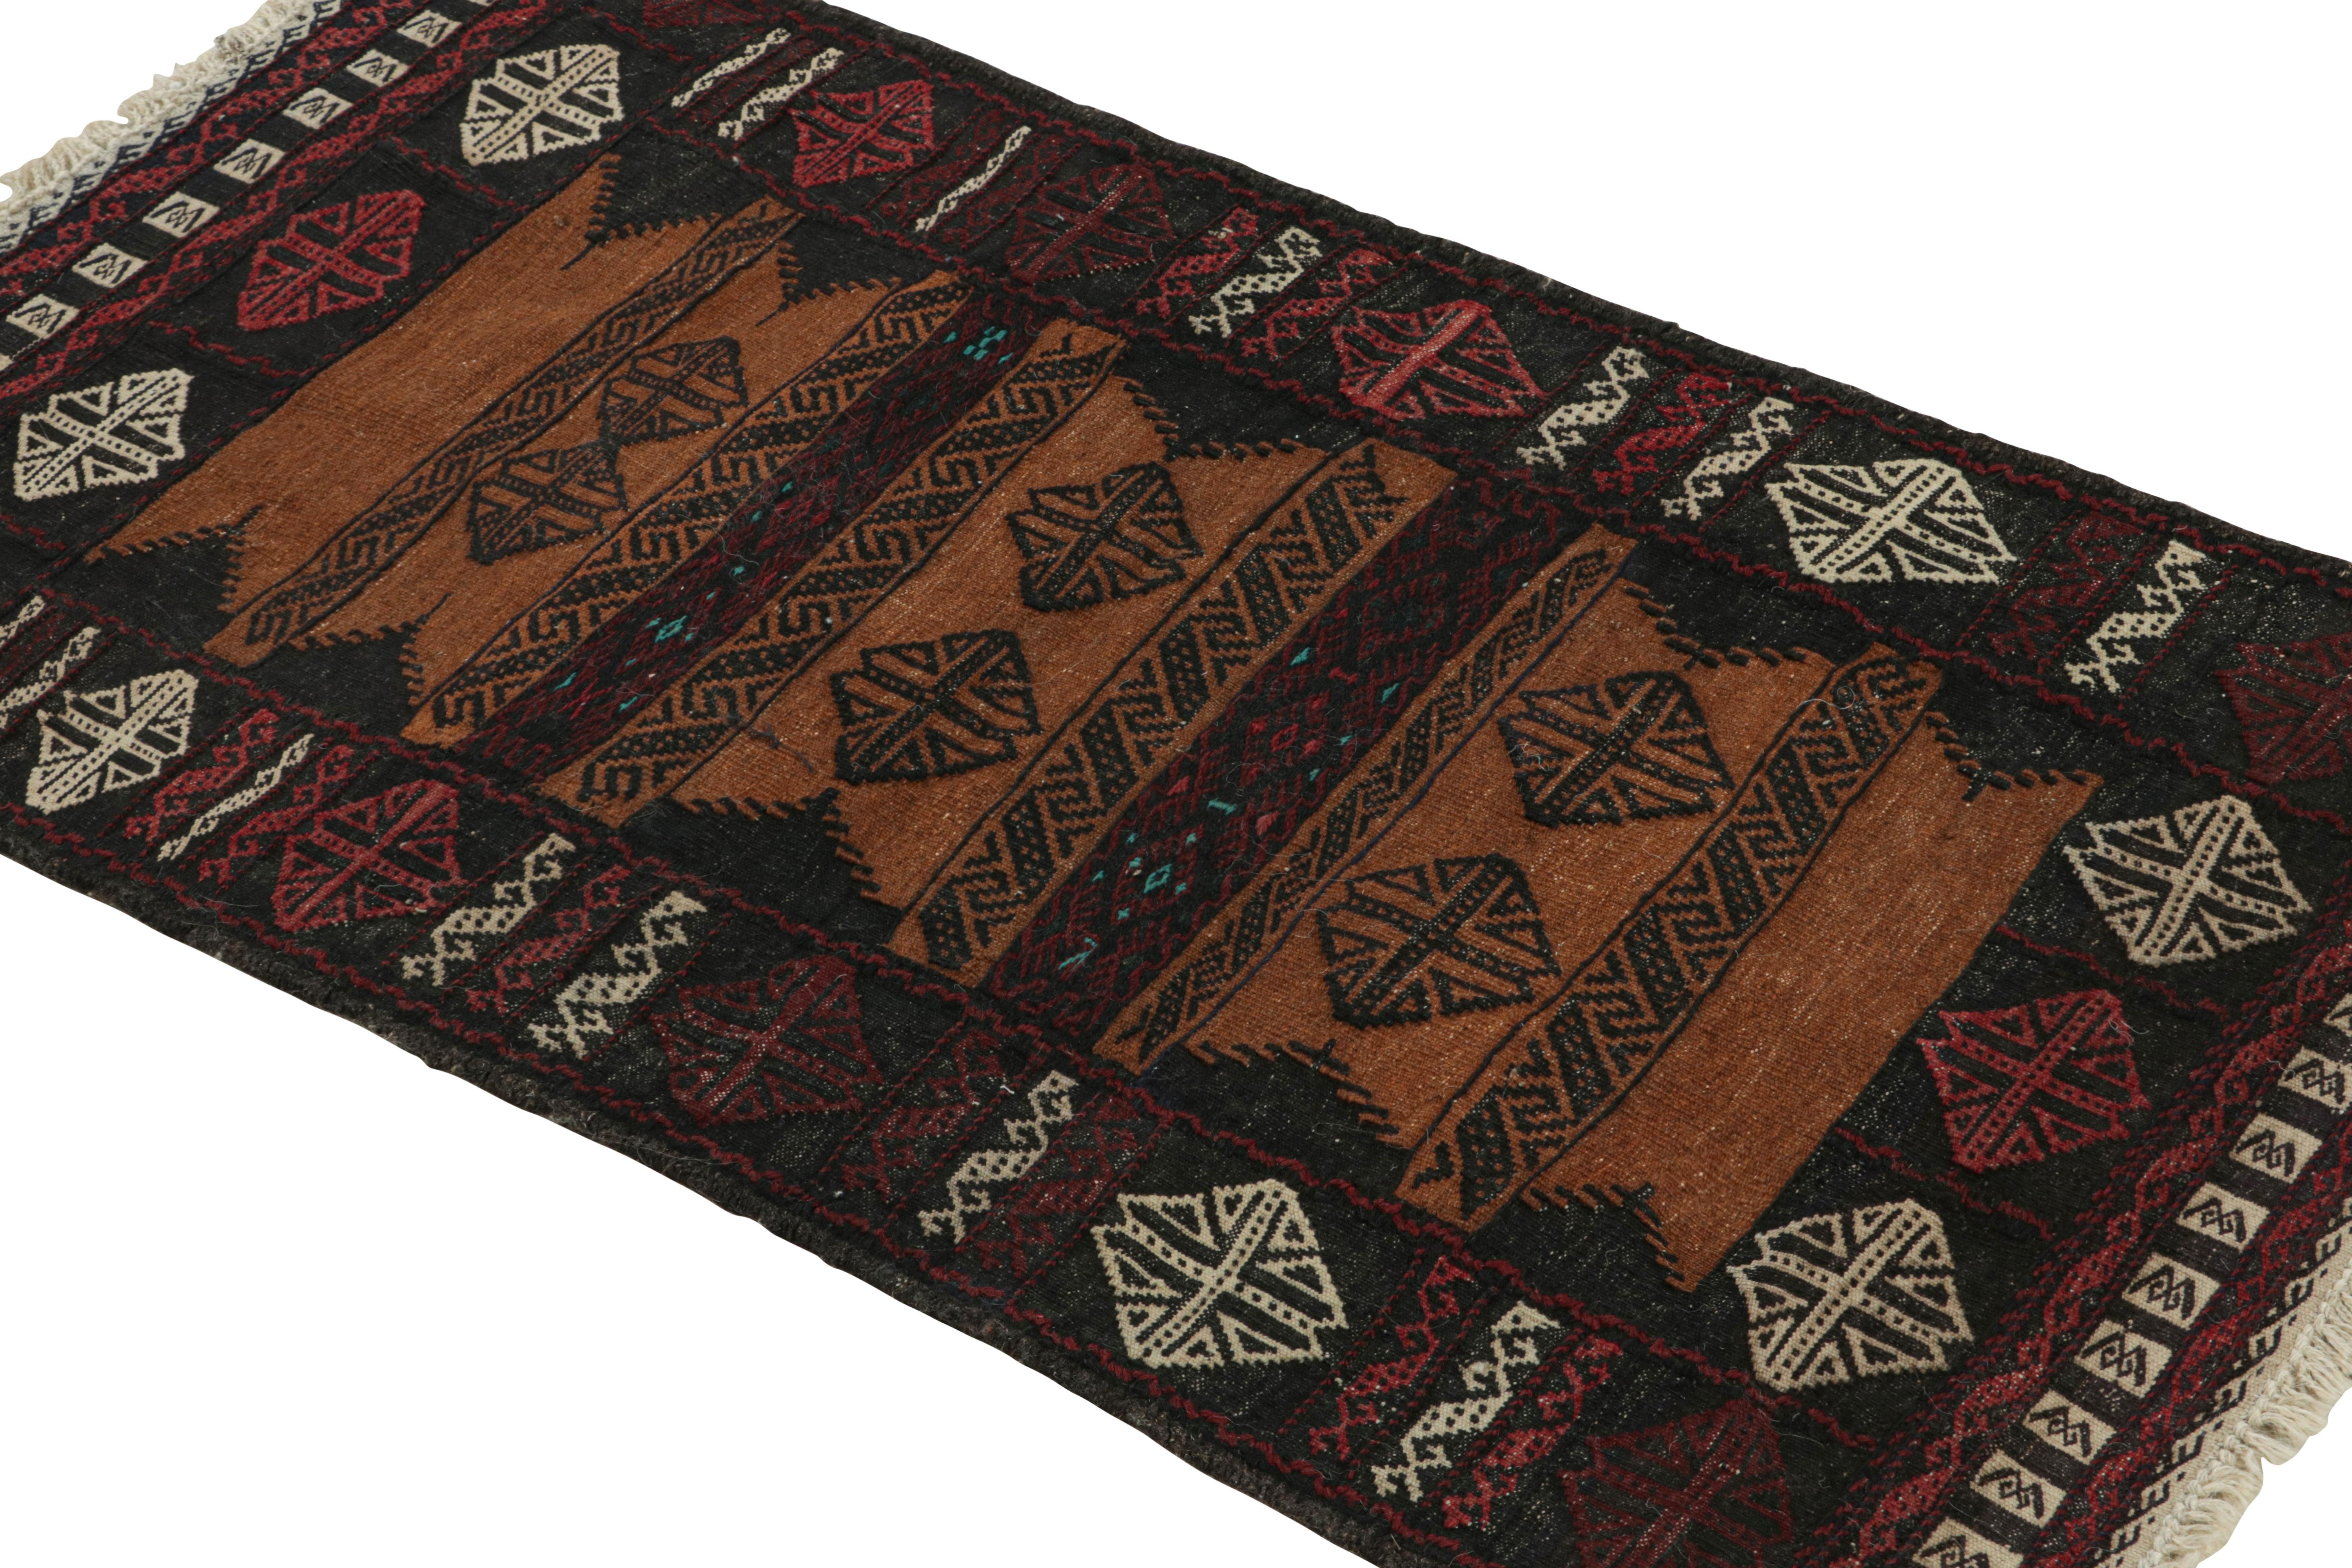 Dieser handgewebte afghanische 2x4-Kilim-Teppich im Vintage-Stil stammt aus der Zeit um 1950-1960 - eine Stammeszusammenstellung unter den Neuzugängen der Rug & Kilim Collection.

Über das Design:

Eine polychrome Farbgebung mit satten und